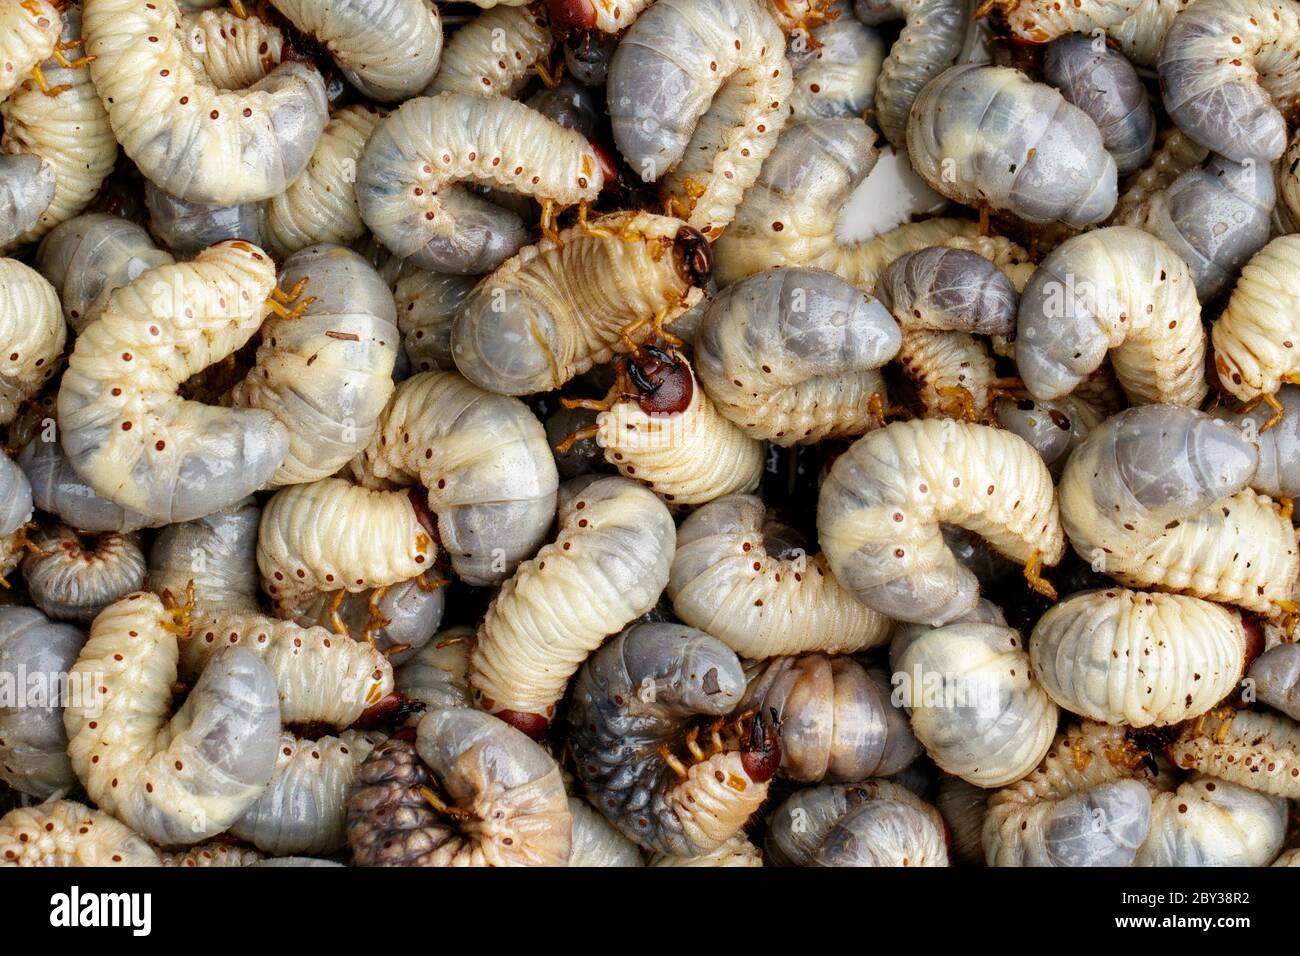 Immagine di vermi di grano, rhinoceros di cocco (Oryctes rhinoceros), Larva. Foto Stock